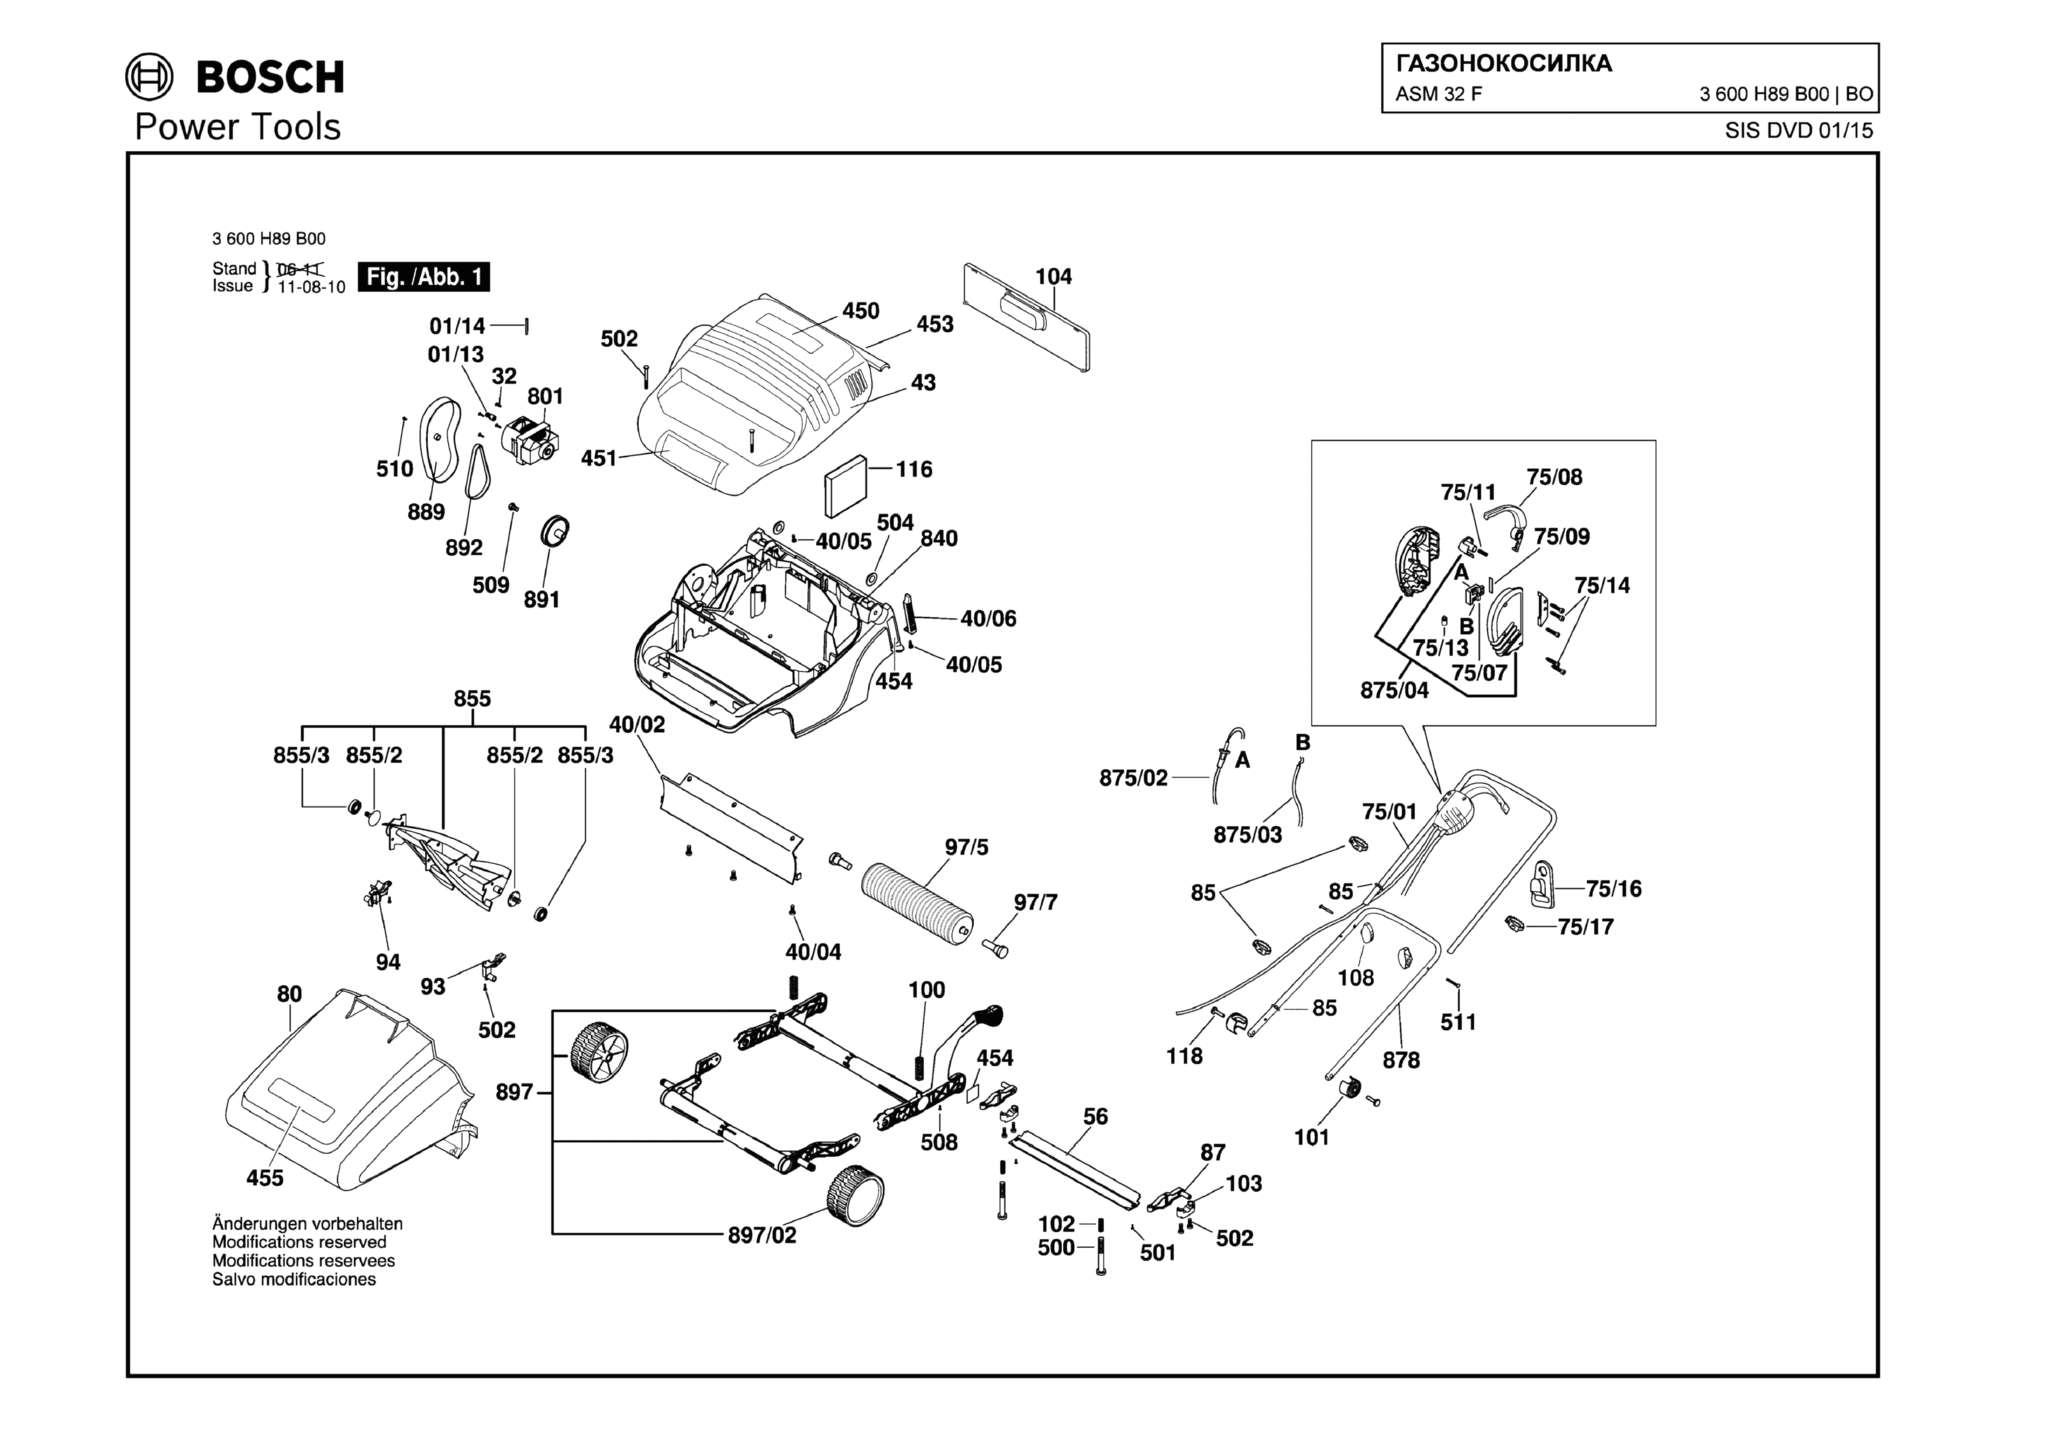 Запчасти, схема и деталировка Bosch ASM 32 F (ТИП 3600H89B00)